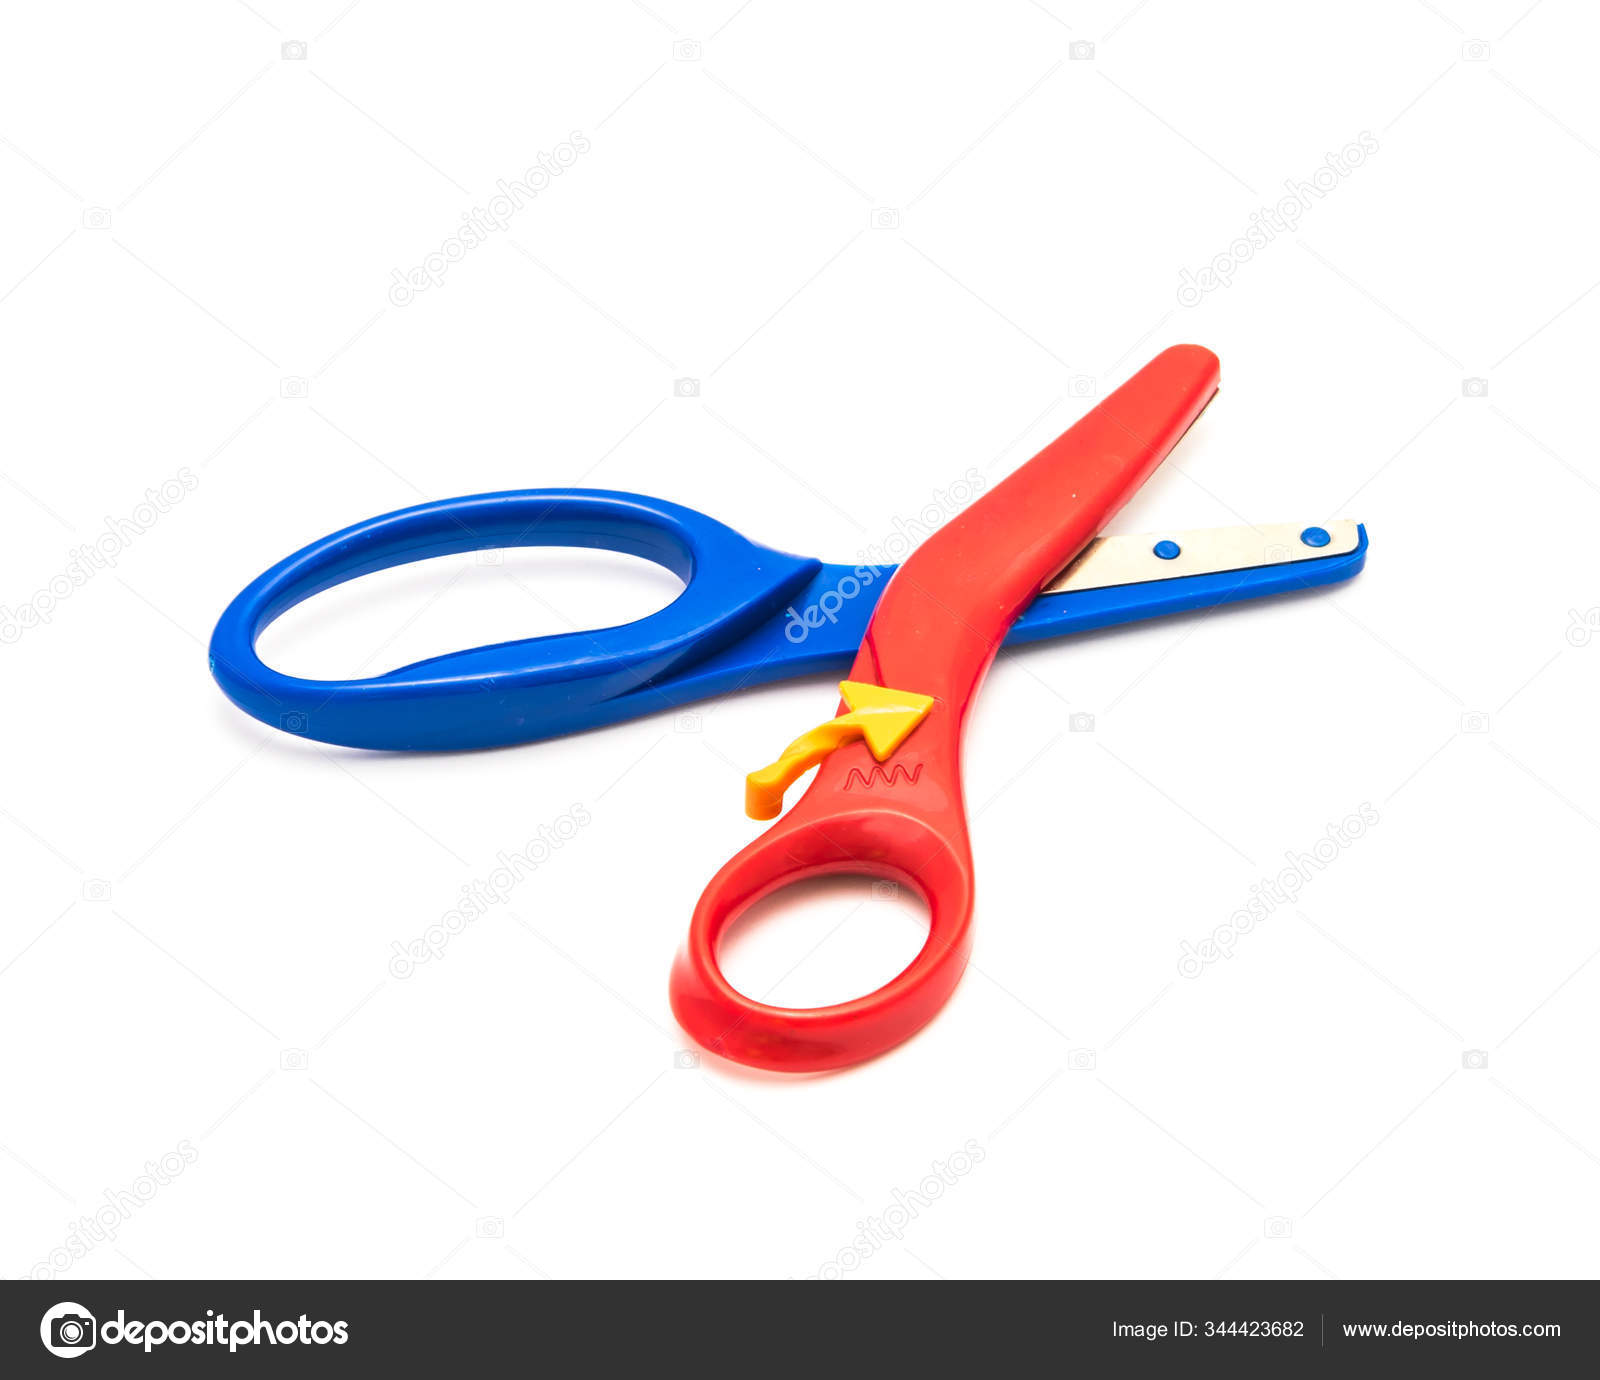 https://st3.depositphotos.com/4283545/34442/i/1600/depositphotos_344423682-stock-photo-preschool-scissors-with-training-lever.jpg